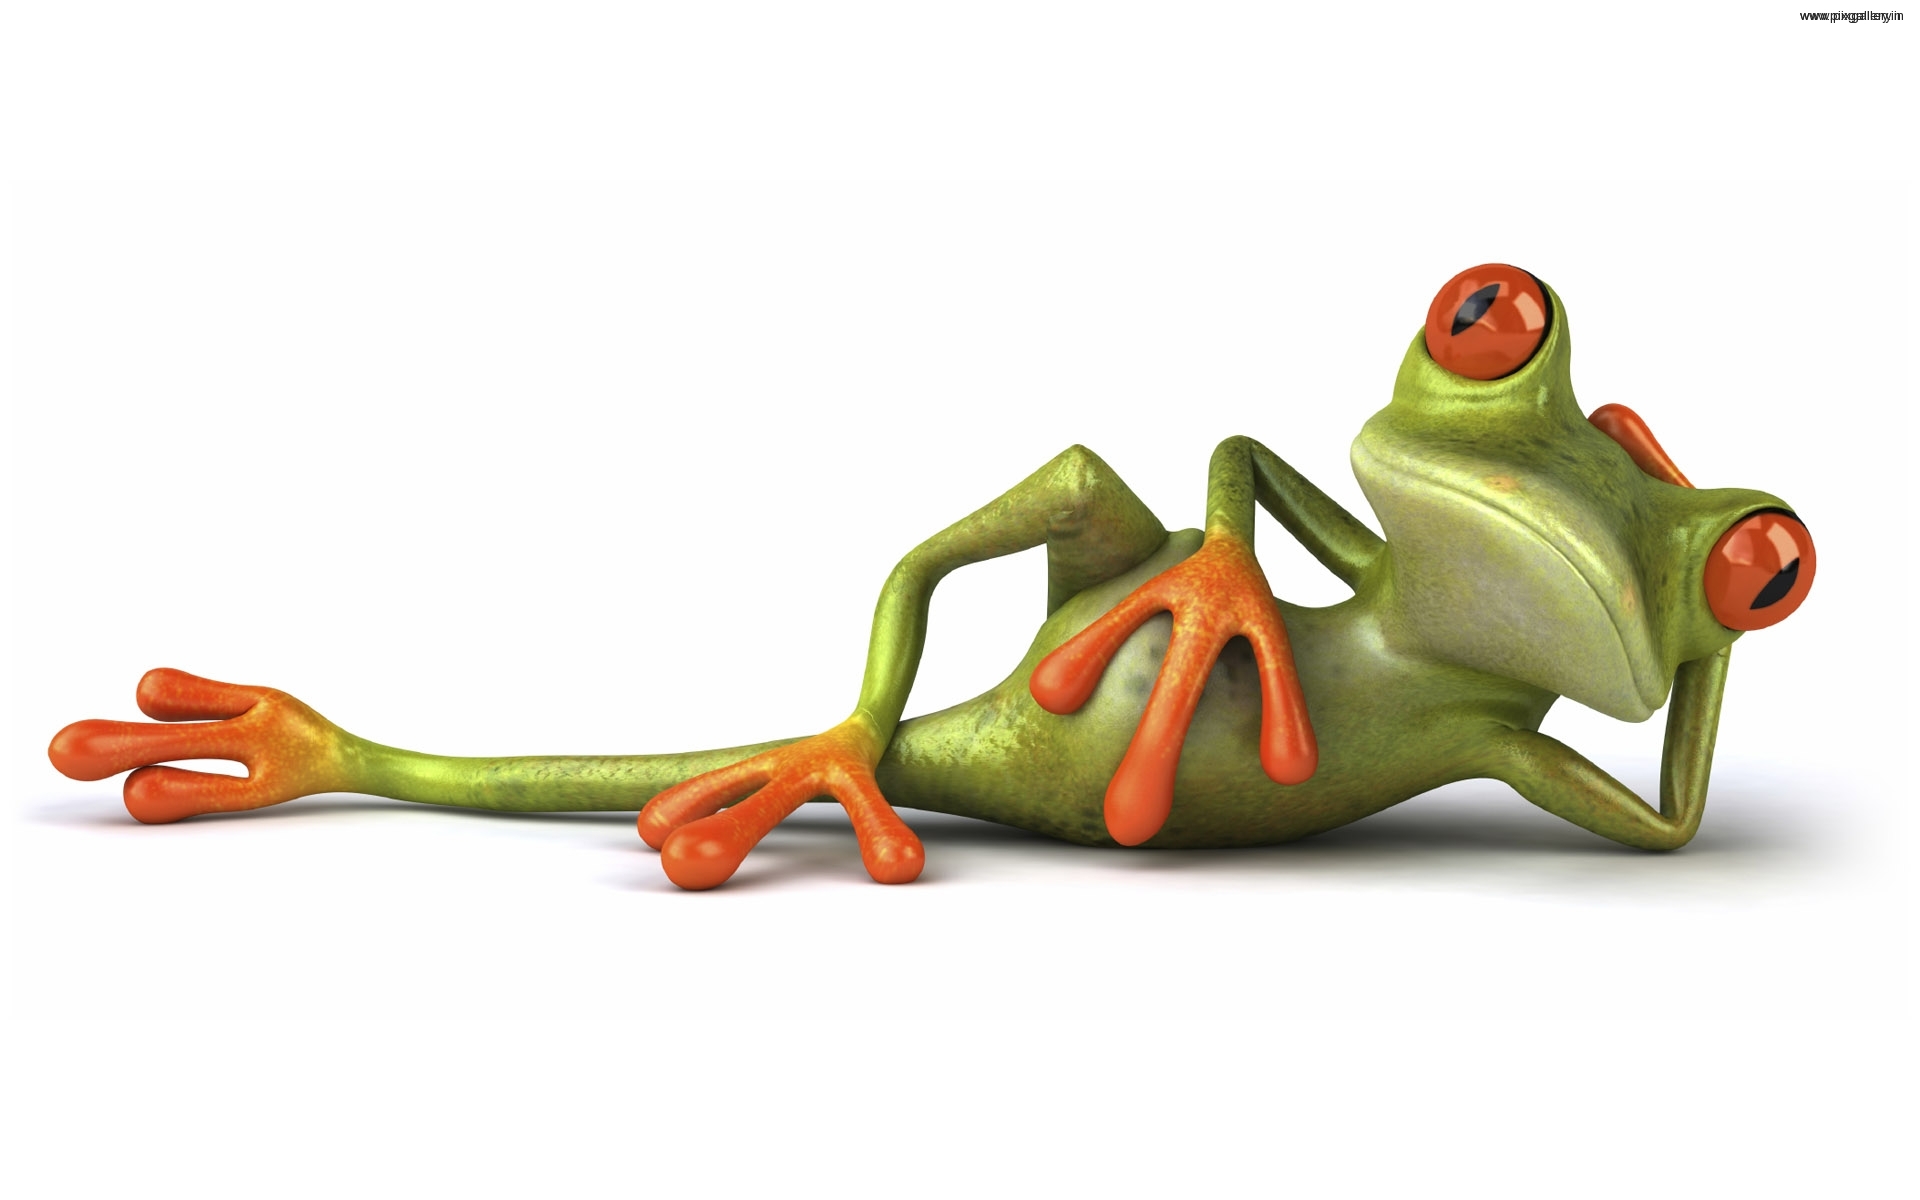  httpanimal backgroundscomred frogred frog desktop wallpaperhtml